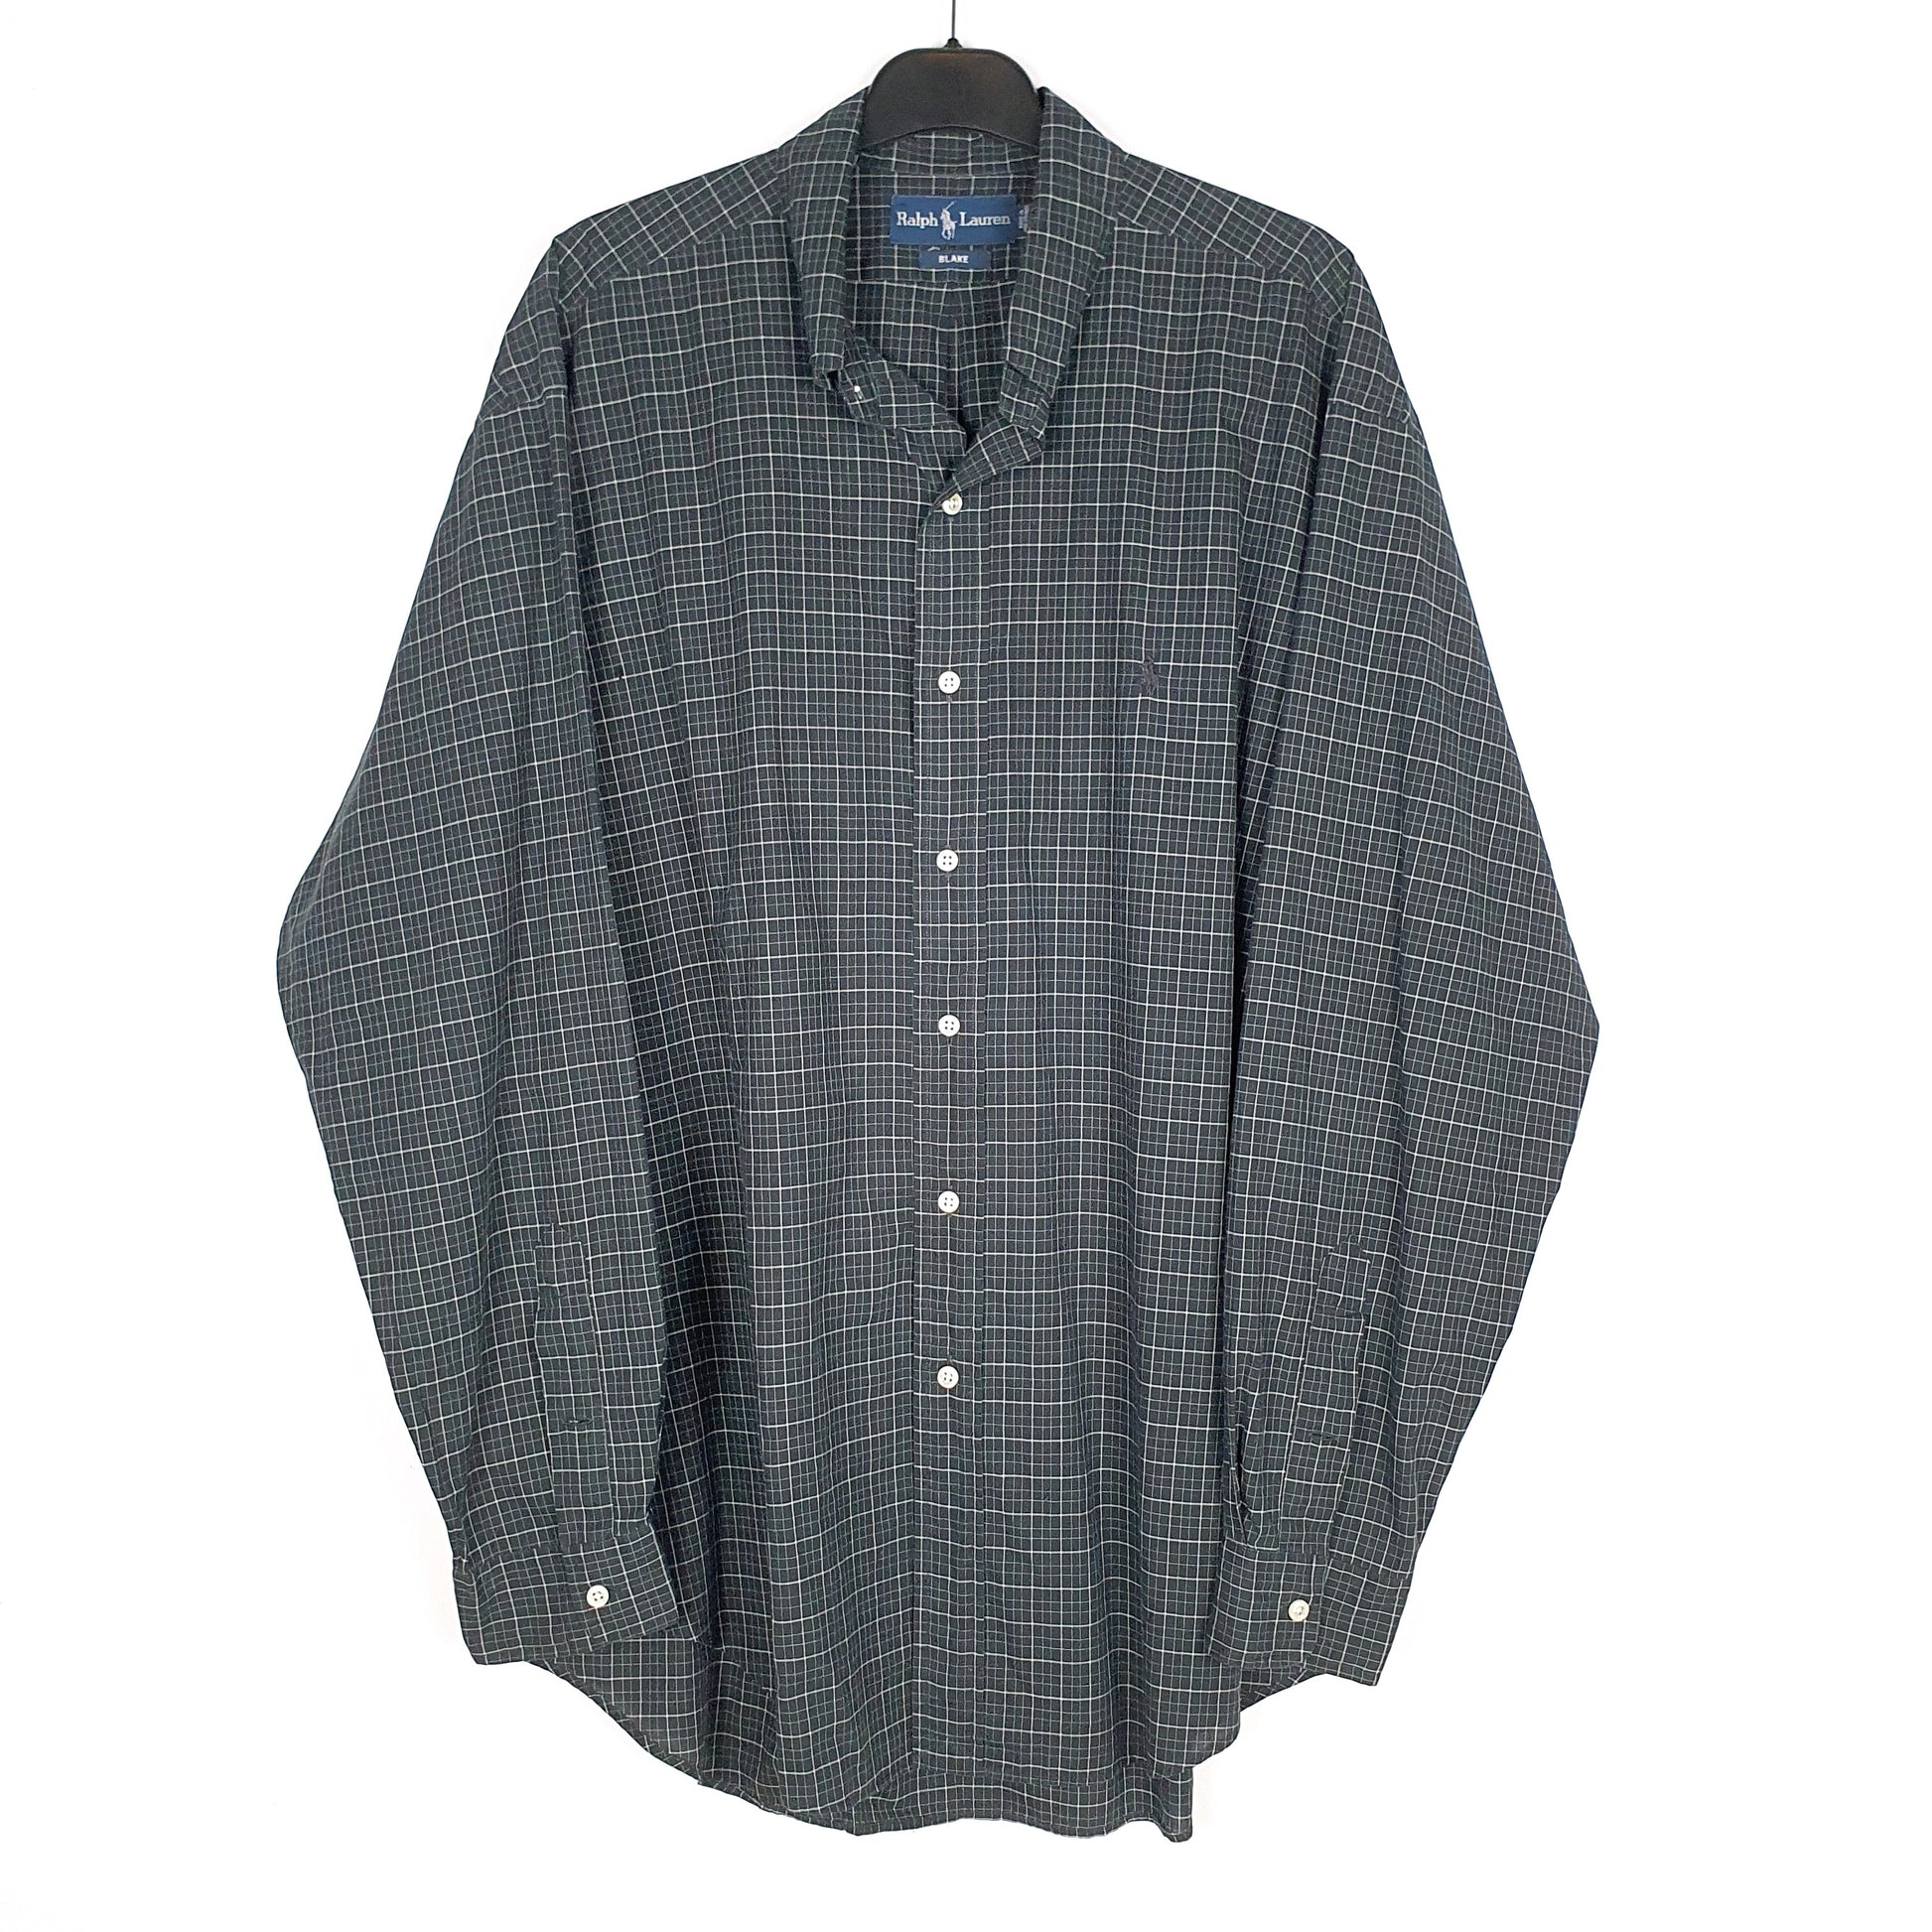 Black Polo Ralph Lauren Long Sleeve Shirt